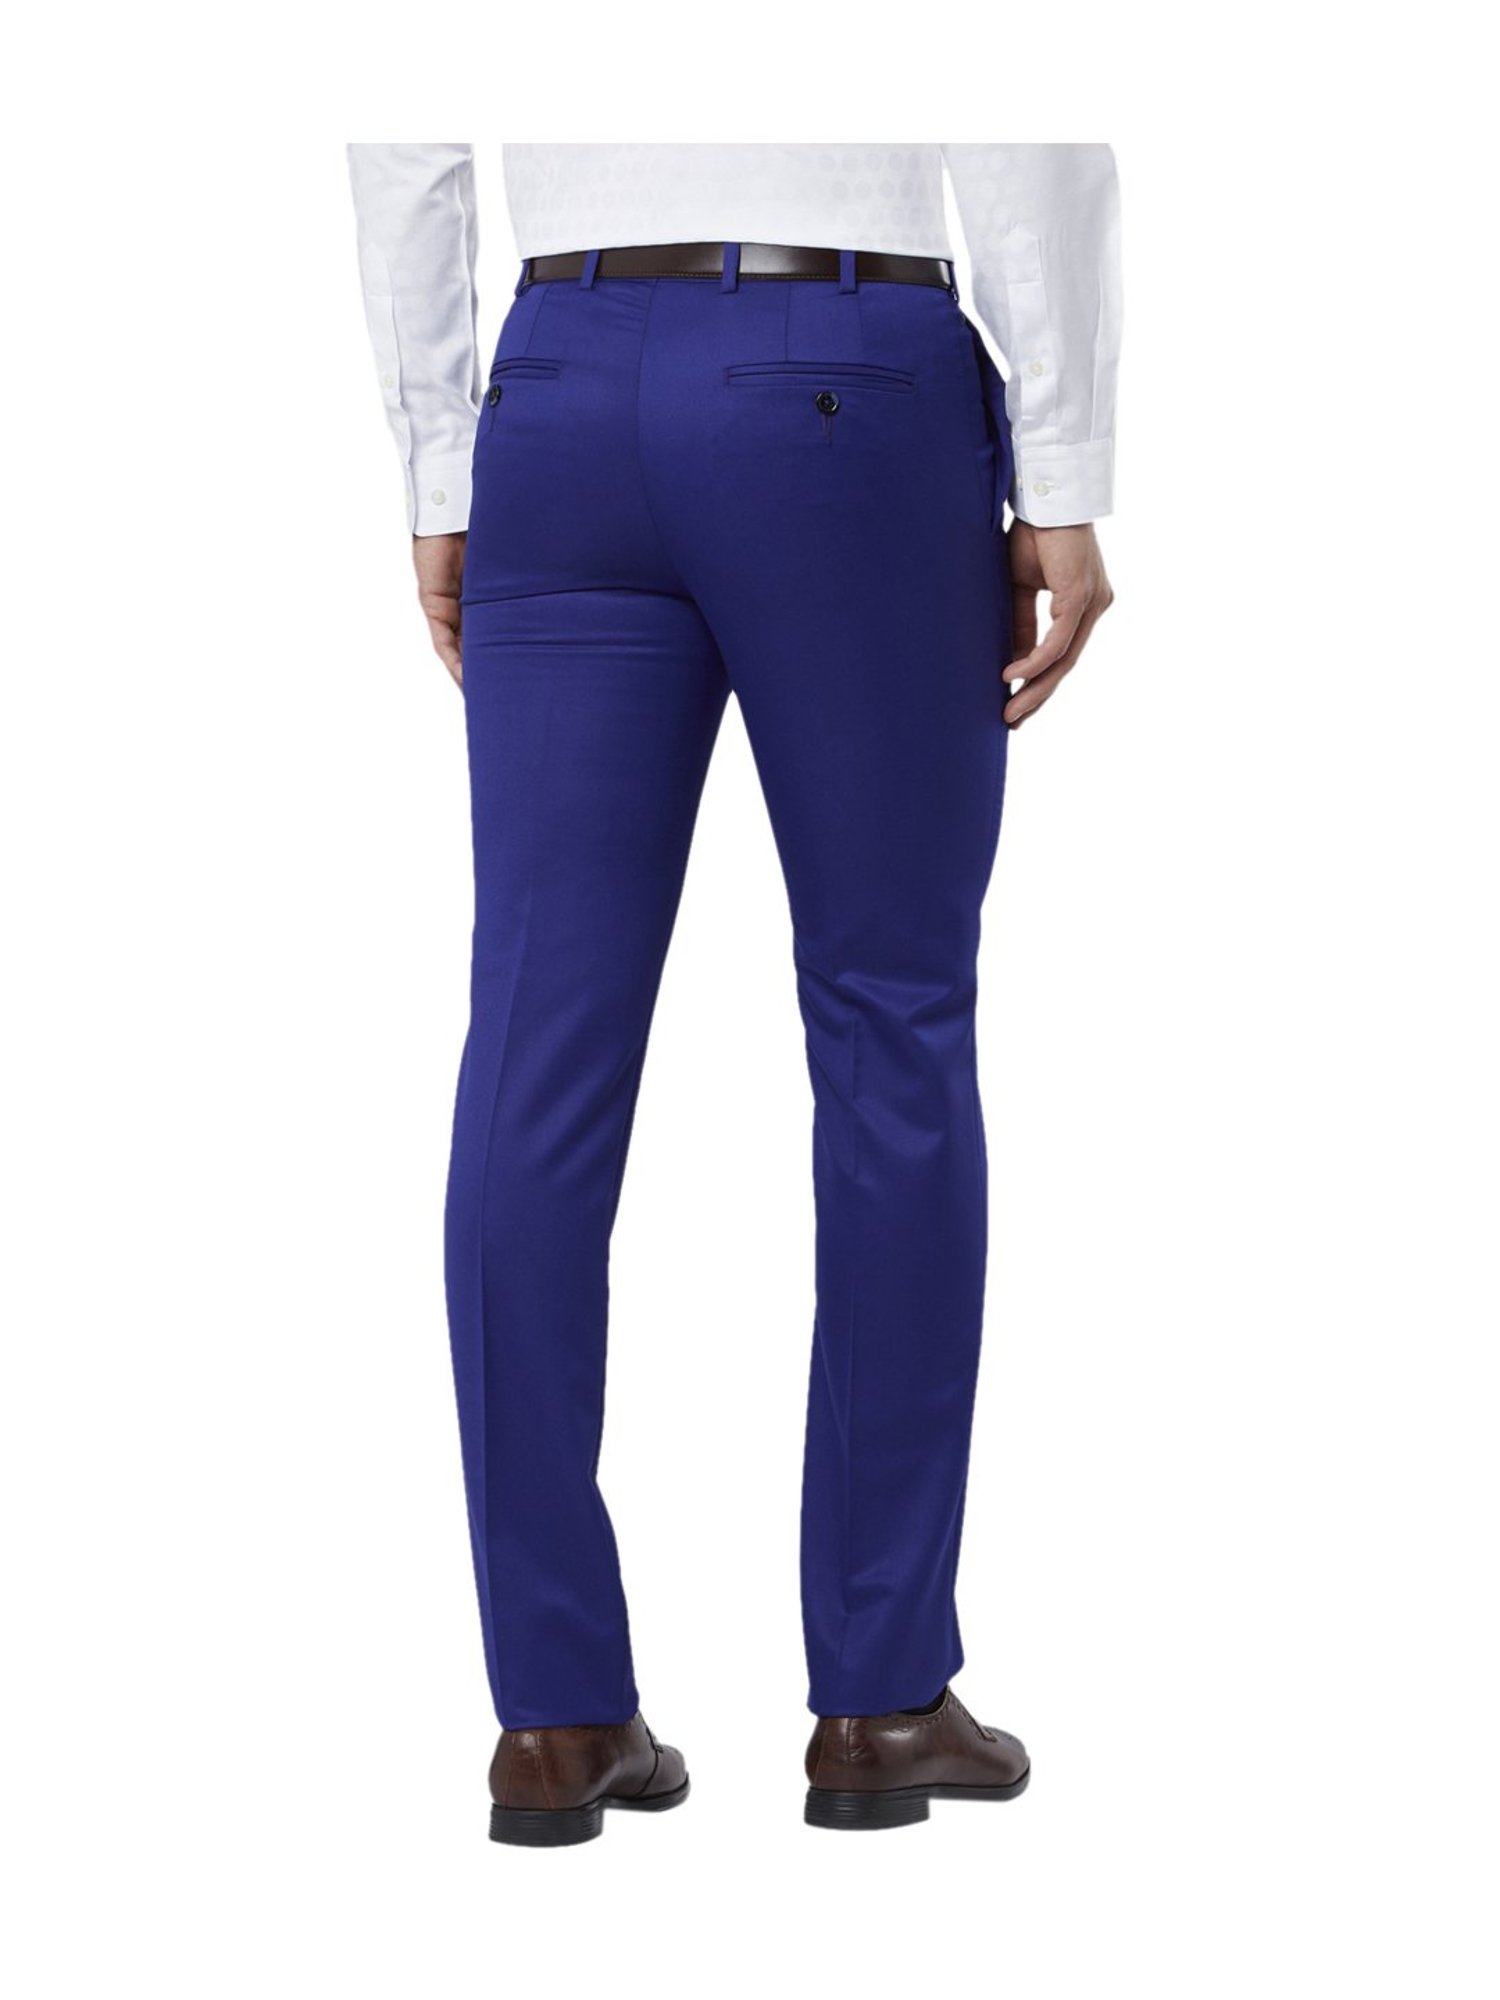 Smart Suit Trouser For Men- Royal Blue | Konga Online Shopping